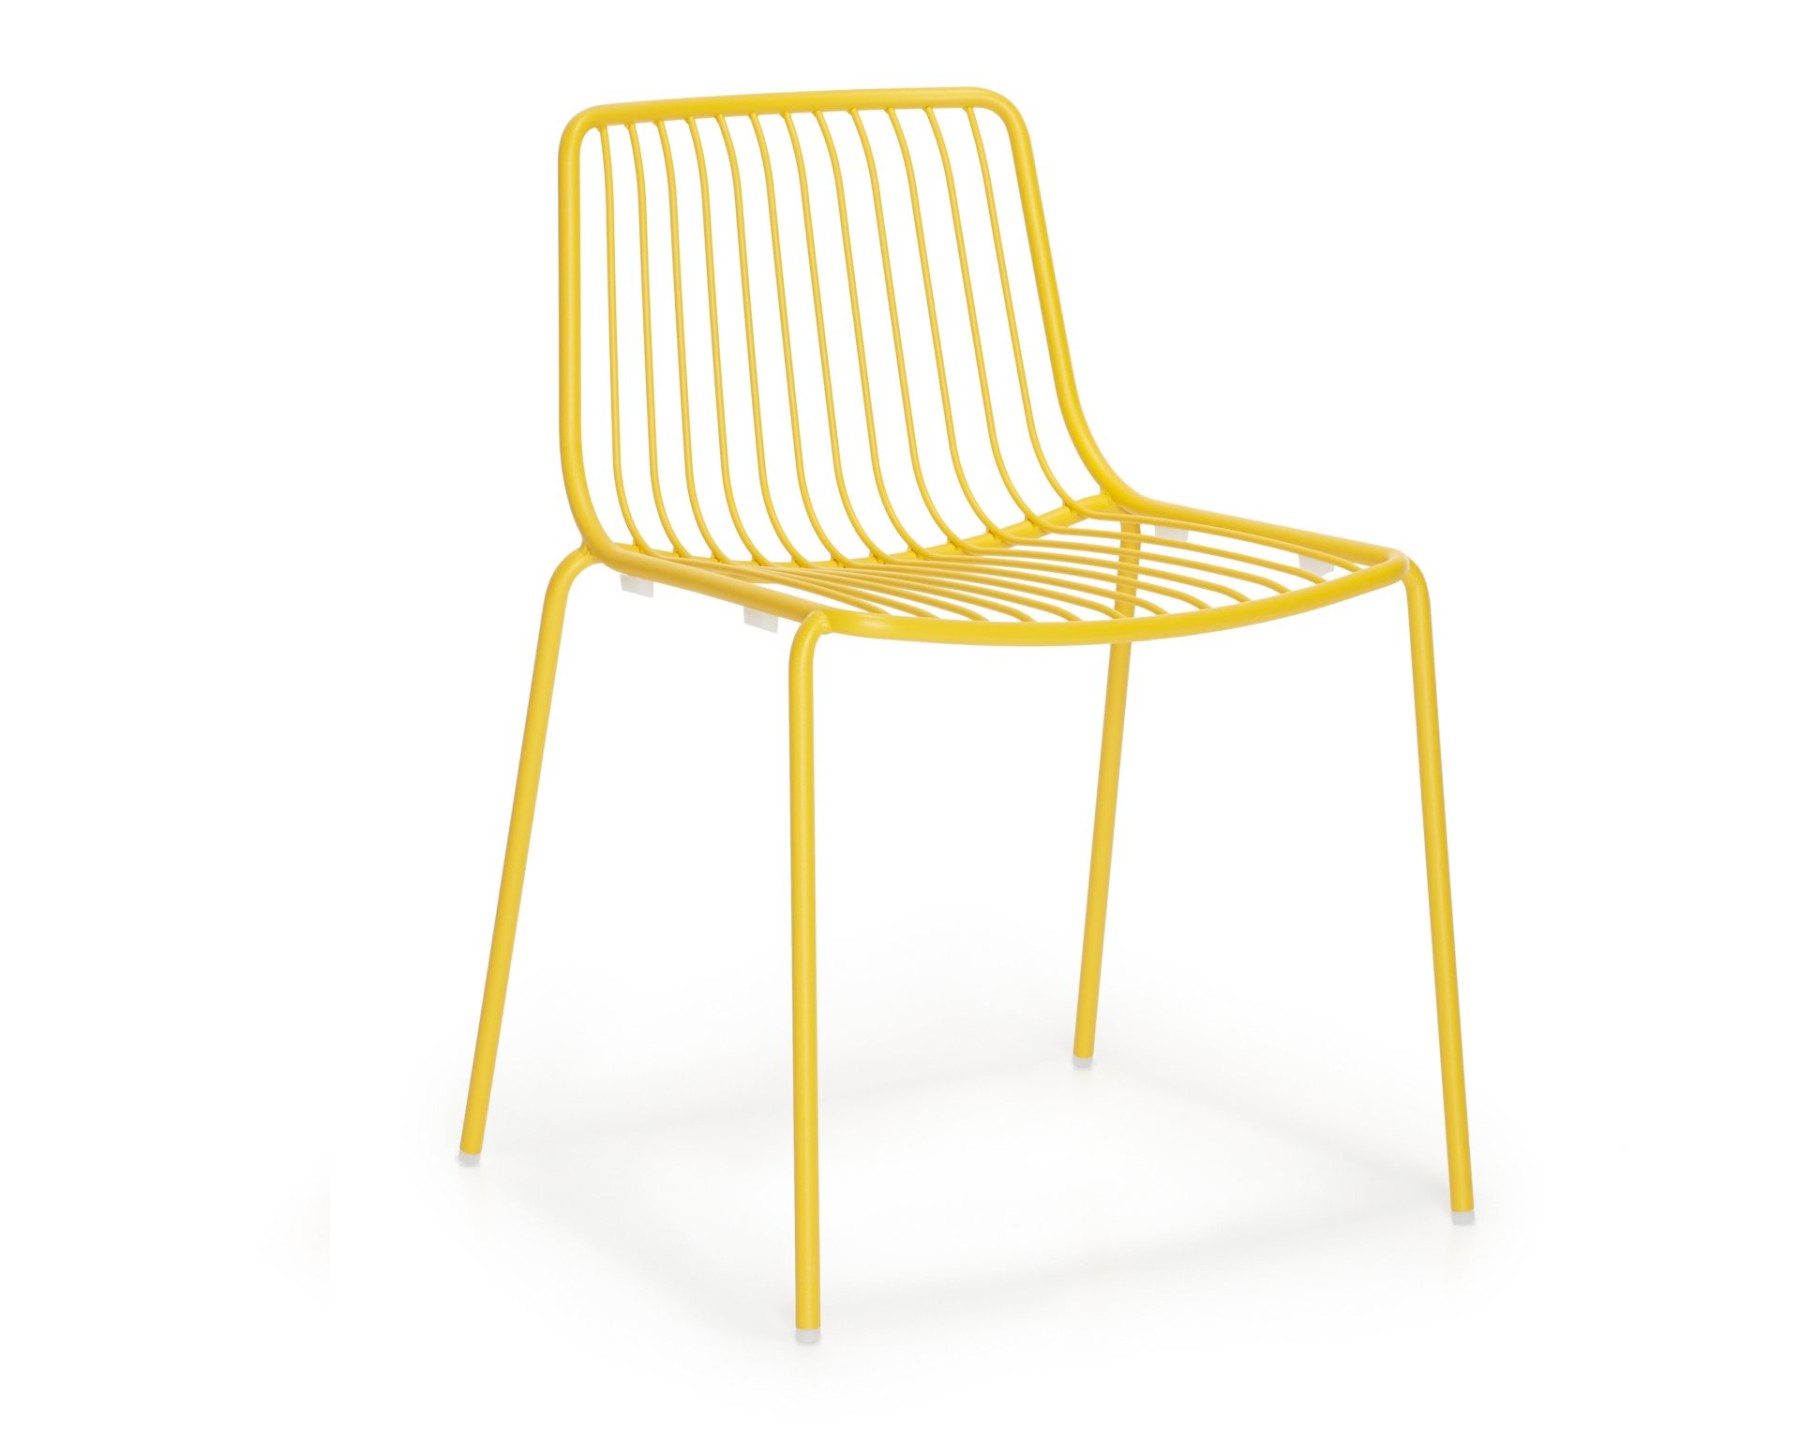 Stuhl gelb Metall stapelbar, Gartenstuhl gelb Metall 